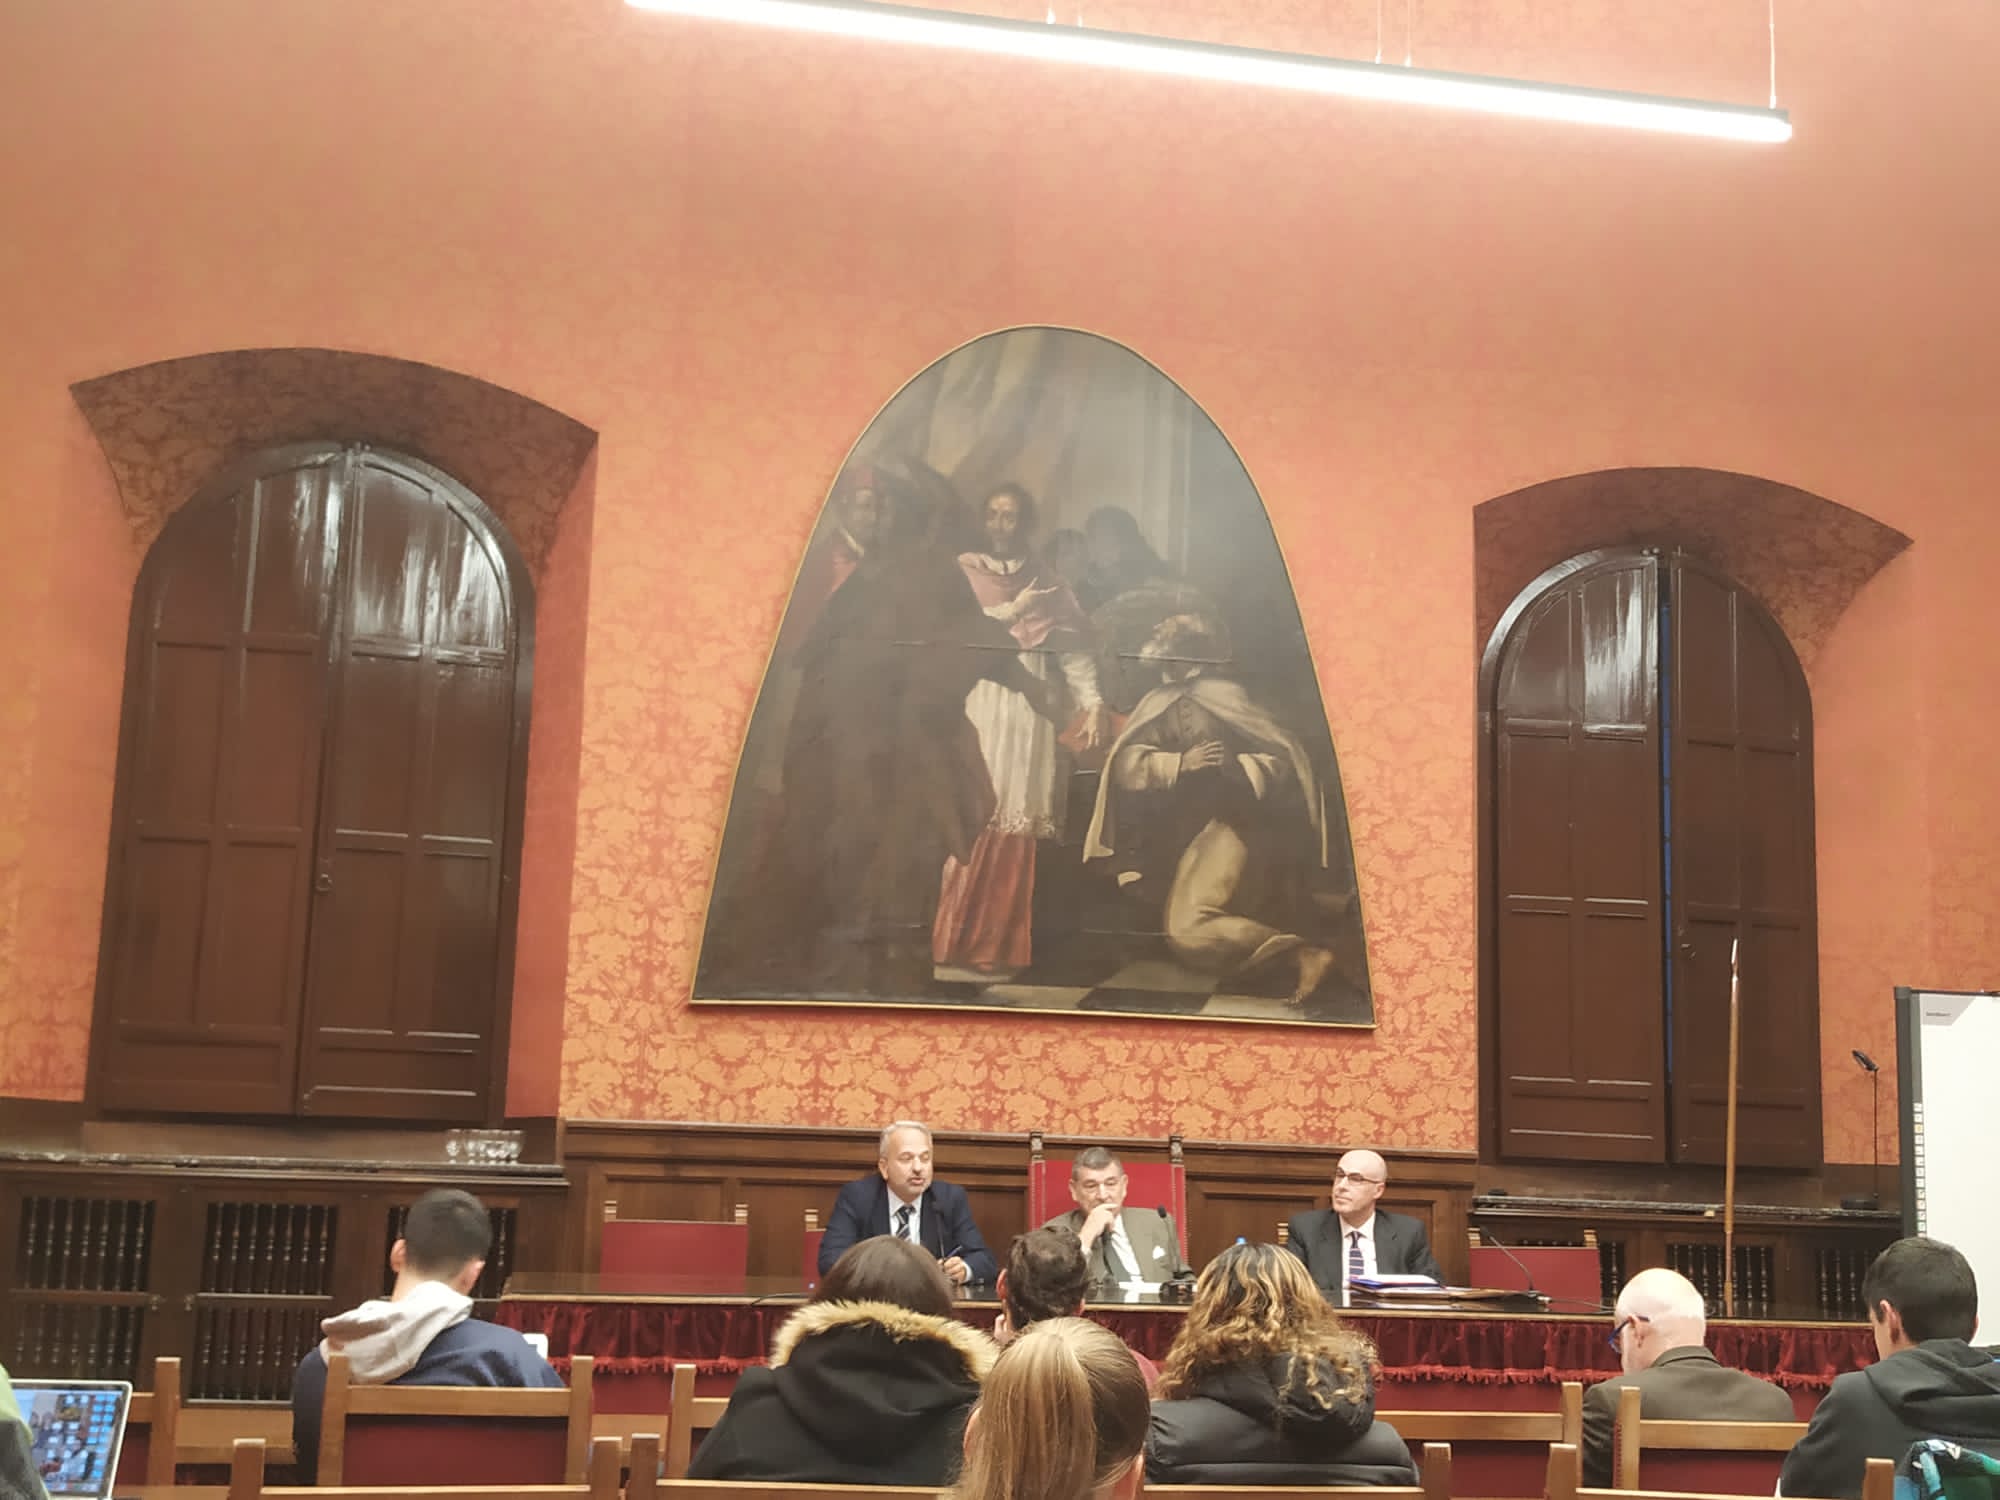 Imagen tomada desde el centro de la sala en la que se puede observar la conferencia de clausura impartida por el profesor Fernández Rozas